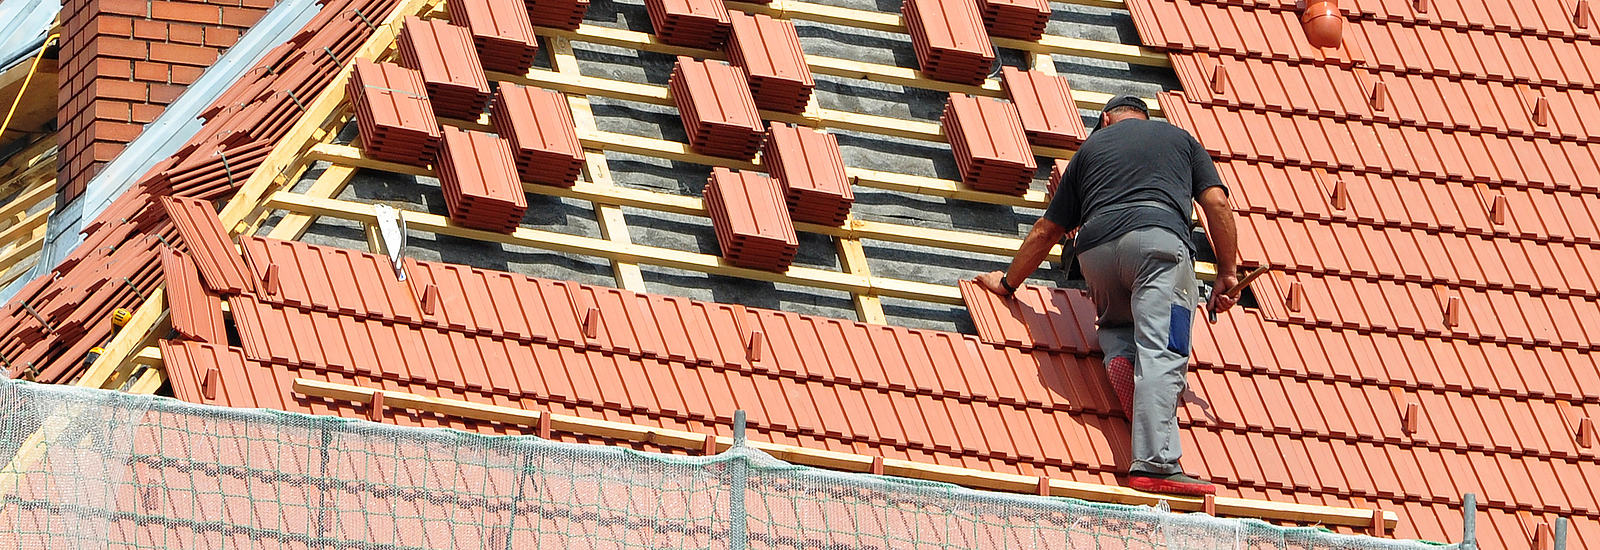 Ein Arbeiter bedeckt ein Dach mit Ziegeln.